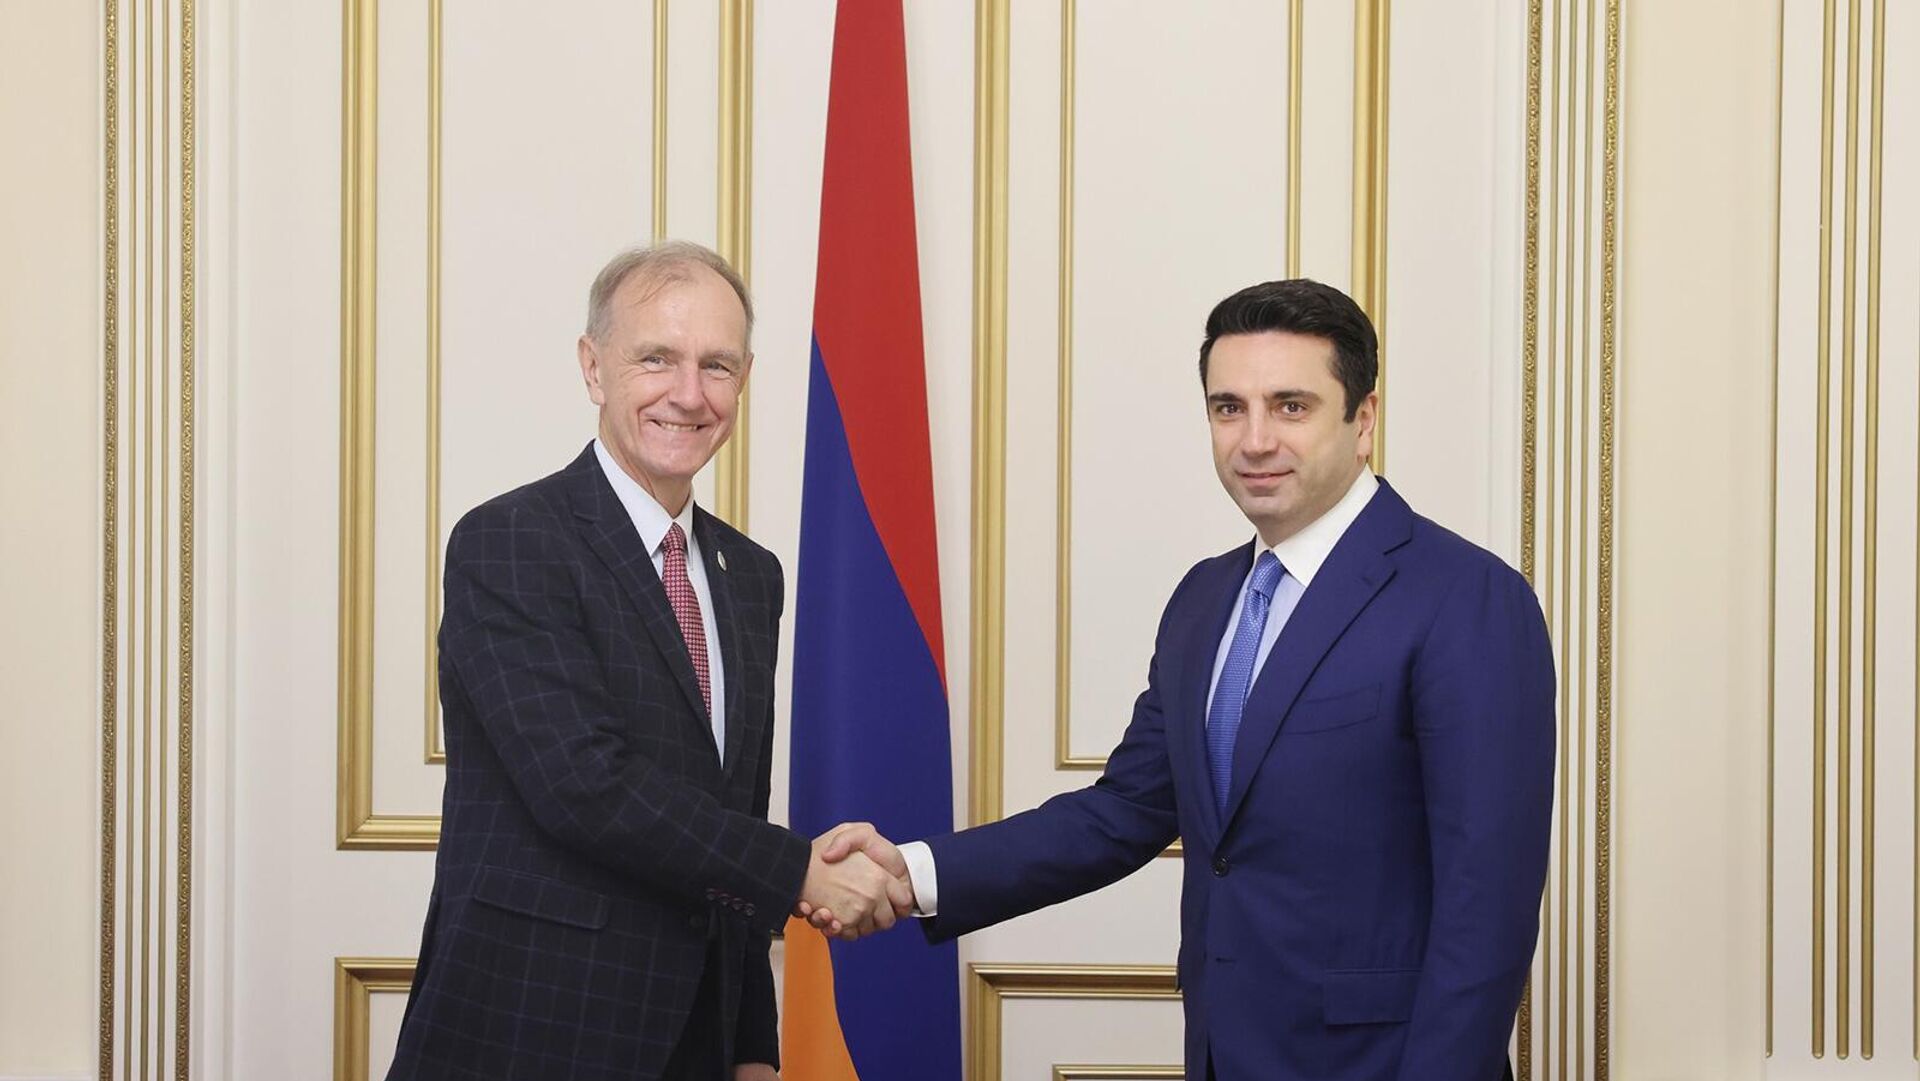 Спикер Ален Симонян недоволен решением Польши о введении транзитных виз для граждан Армении 